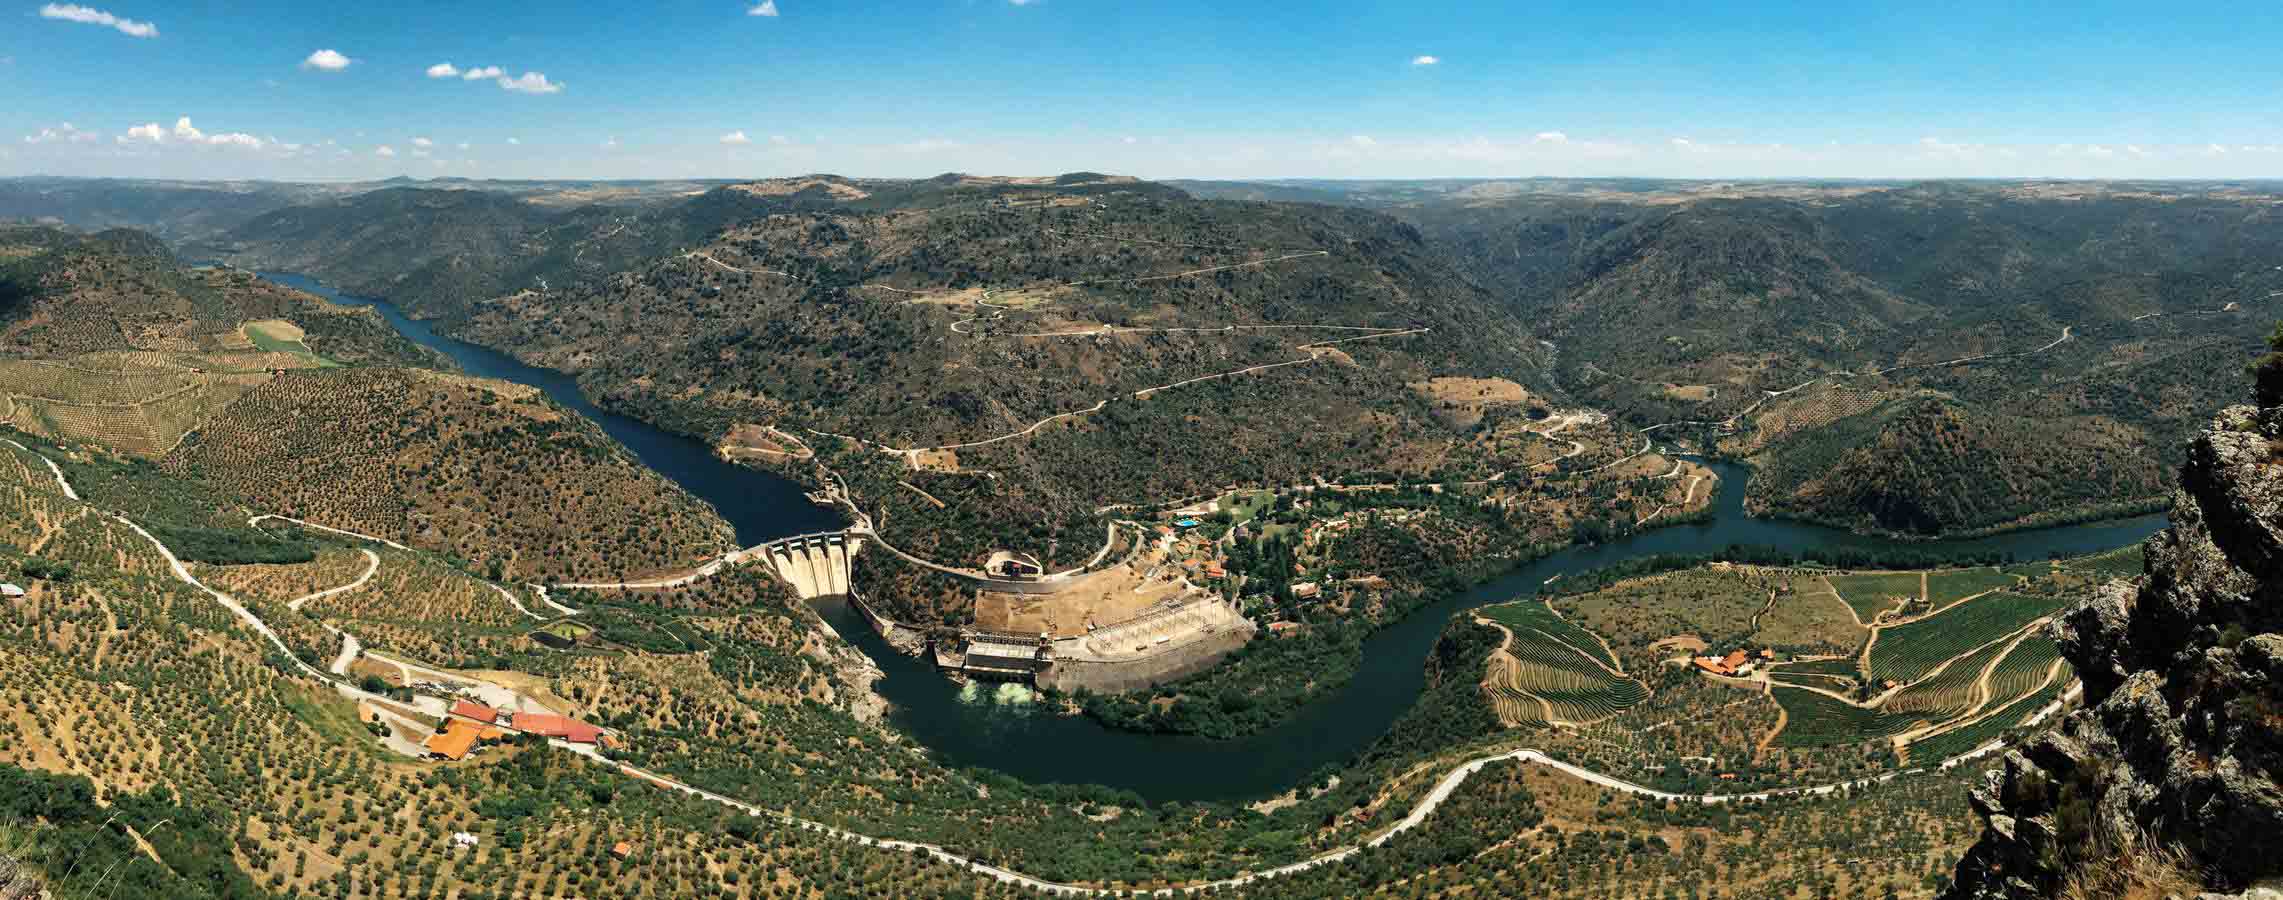 El salto de Saucelle en Salamanca y la desembocadura del río Huebra, desde el Mirador Penedo Durão en Portugal.